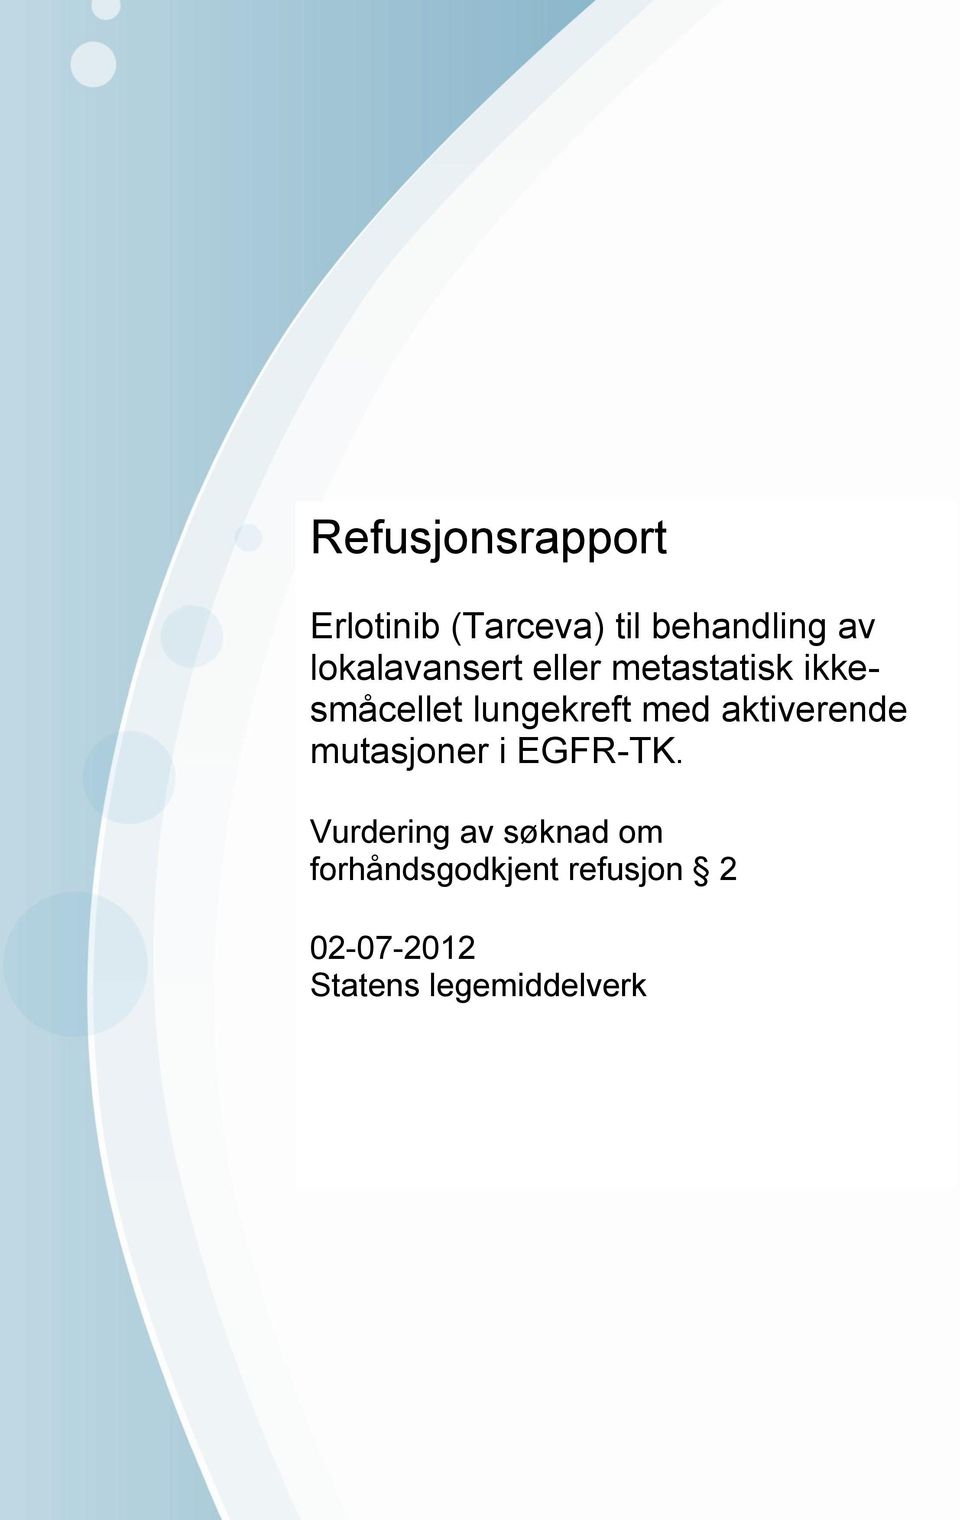 Vurdering av søknad om forhåndsgodkjent refusjon 2 02-07-2012 Statens legemiddelverk Brev stiles til Statens